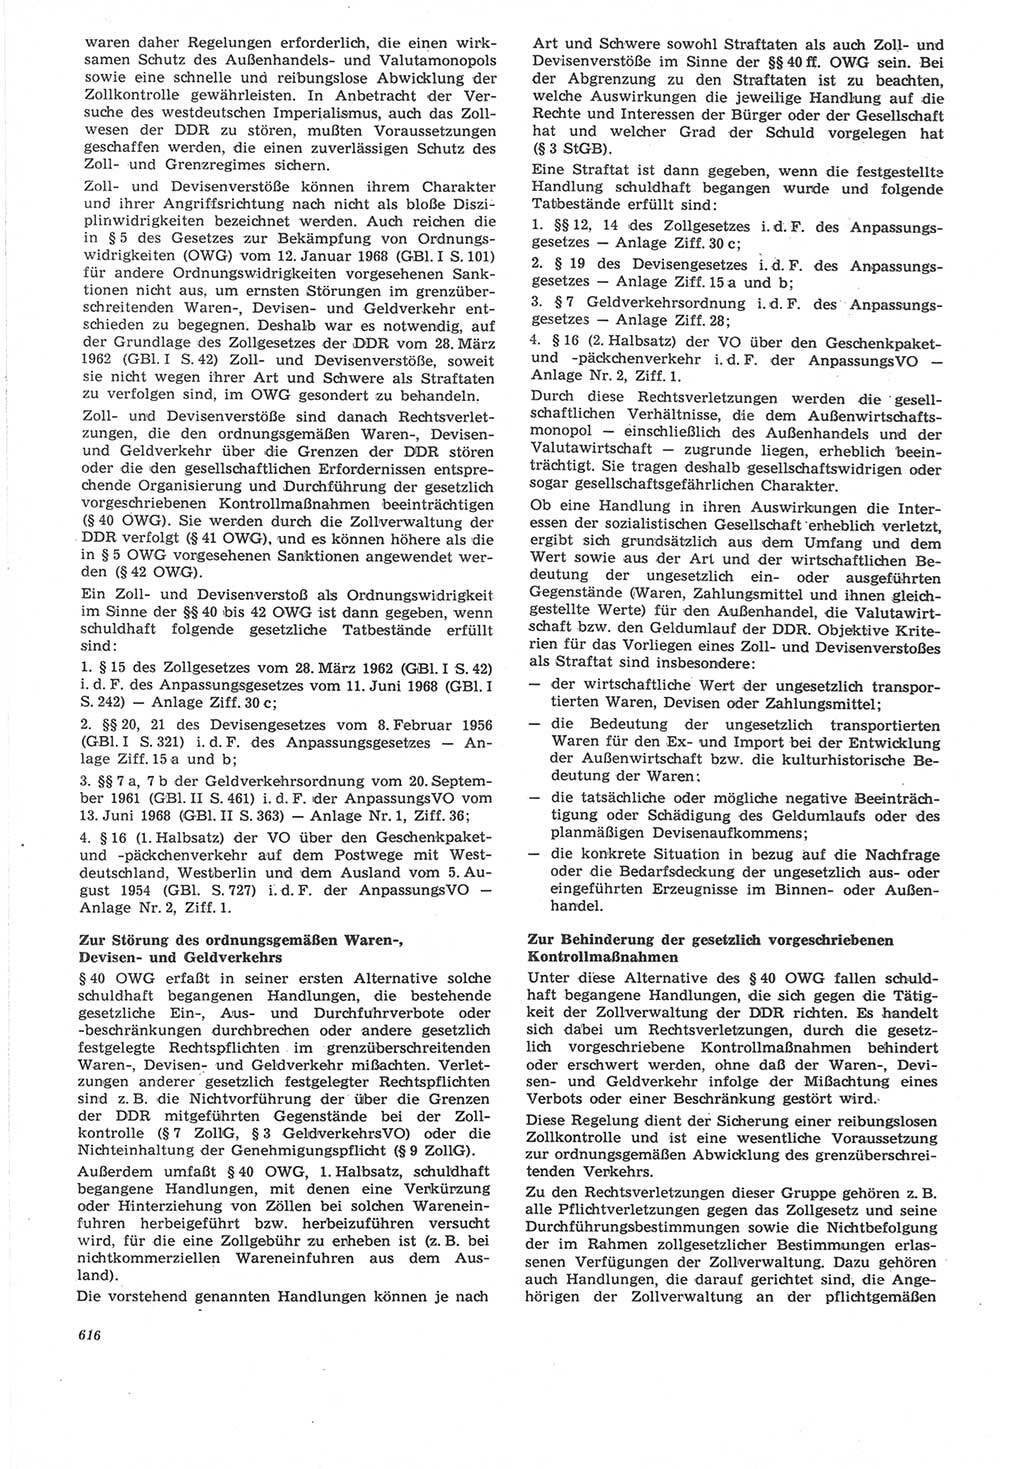 Neue Justiz (NJ), Zeitschrift für Recht und Rechtswissenschaft [Deutsche Demokratische Republik (DDR)], 22. Jahrgang 1968, Seite 616 (NJ DDR 1968, S. 616)